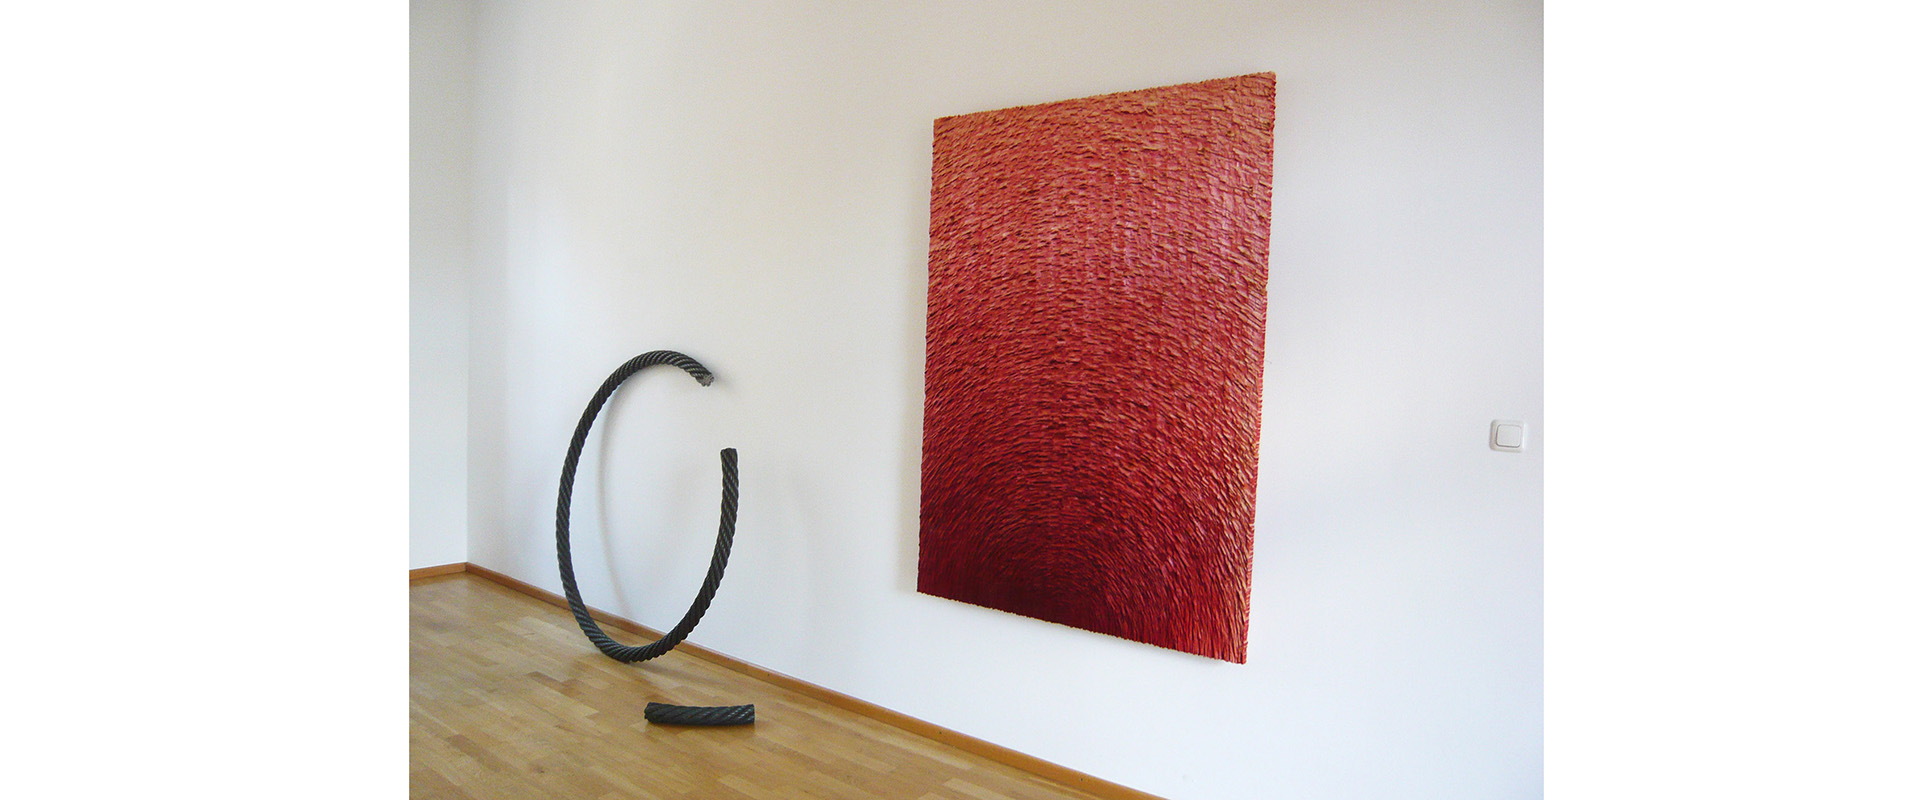 Ausstellungsansicht "CUTS. Skulpturen und Wandobjekte. Till Augustin - Alfred Haberpointner", Galerie Renate Bender, 2013